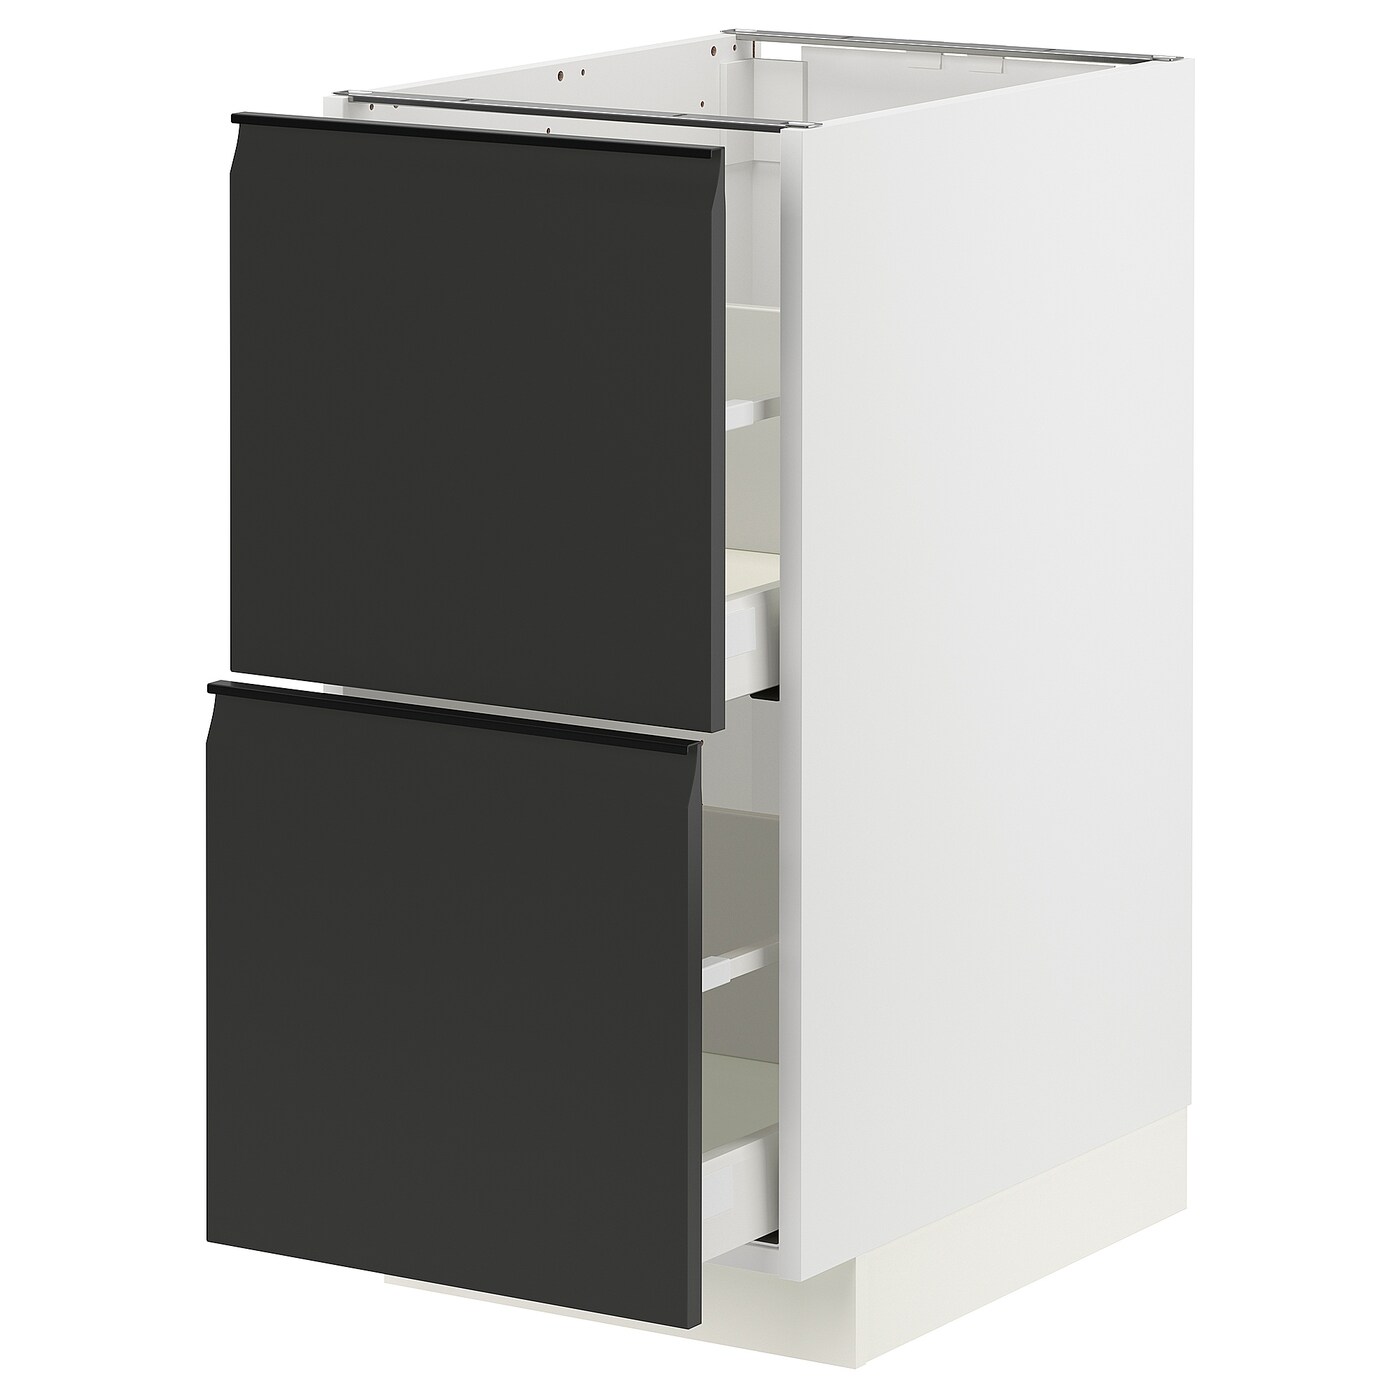 Напольный кухонный шкаф  - IKEA METOD MAXIMERA, 88x61,6x40см, белый/черный, МЕТОД МАКСИМЕРА ИКЕА